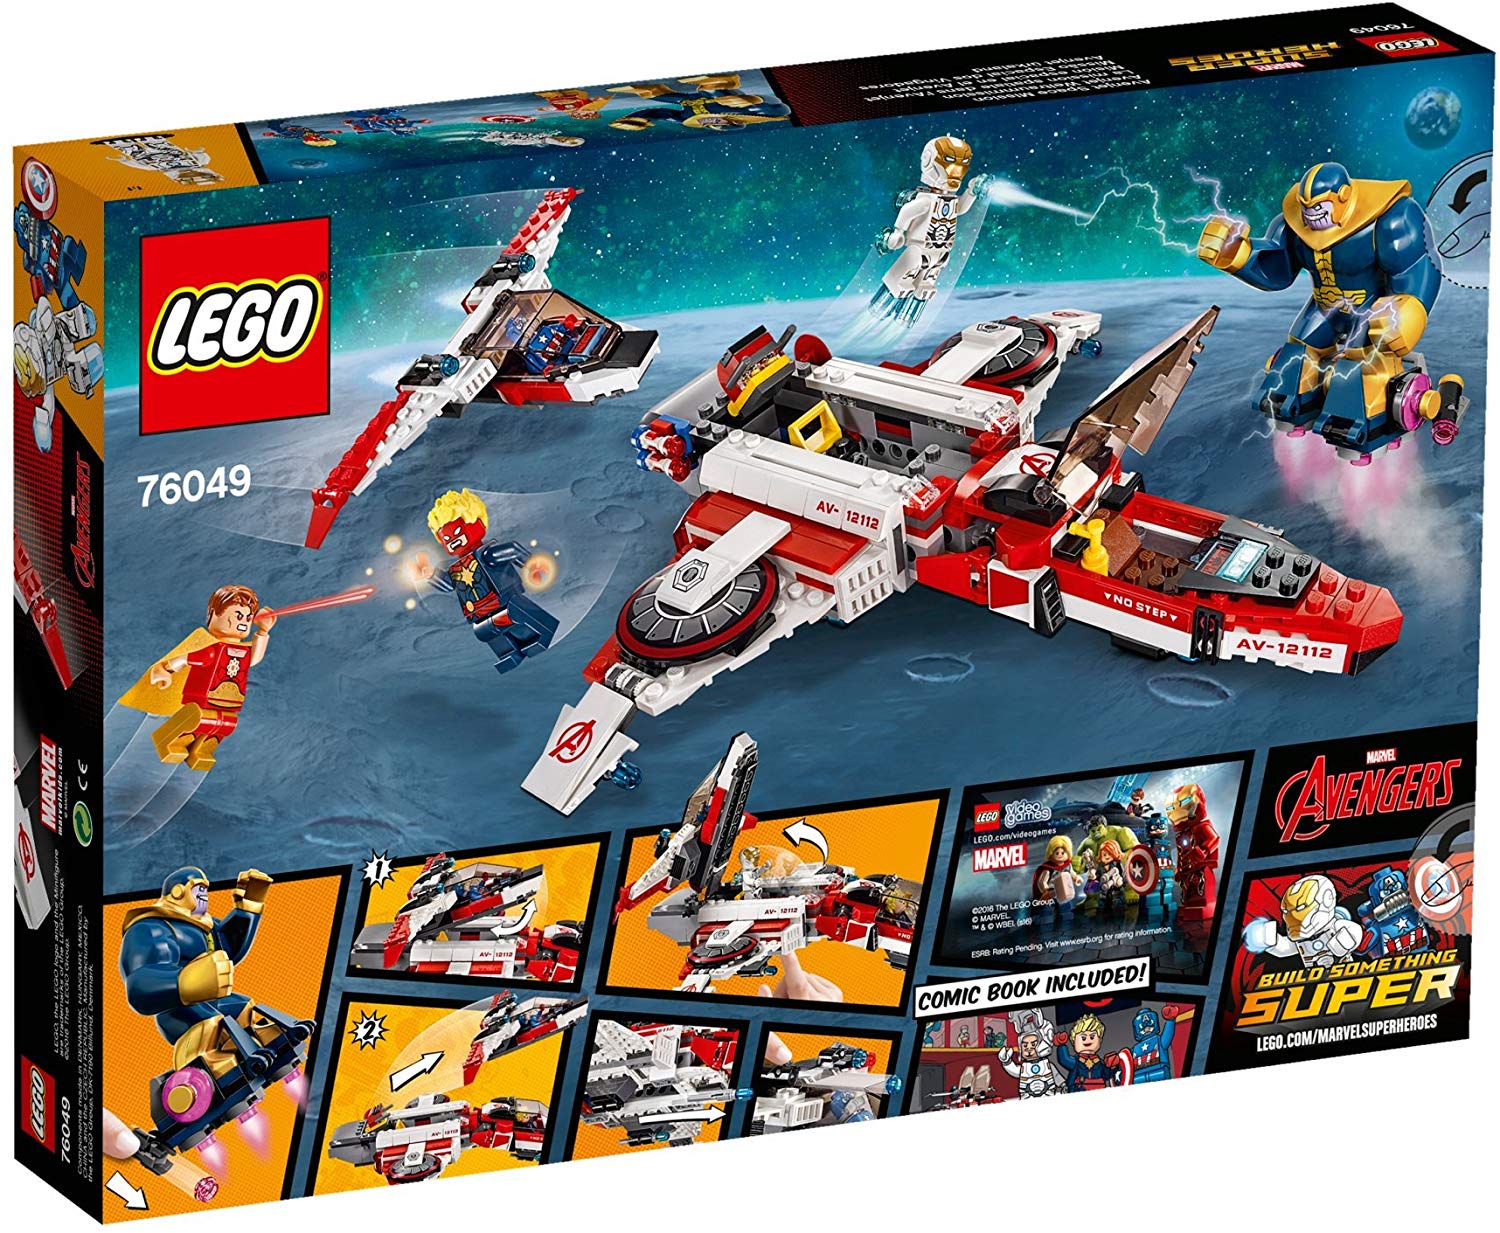 Lego Marvel Super Heroes 76049 Avenjet Space Mission